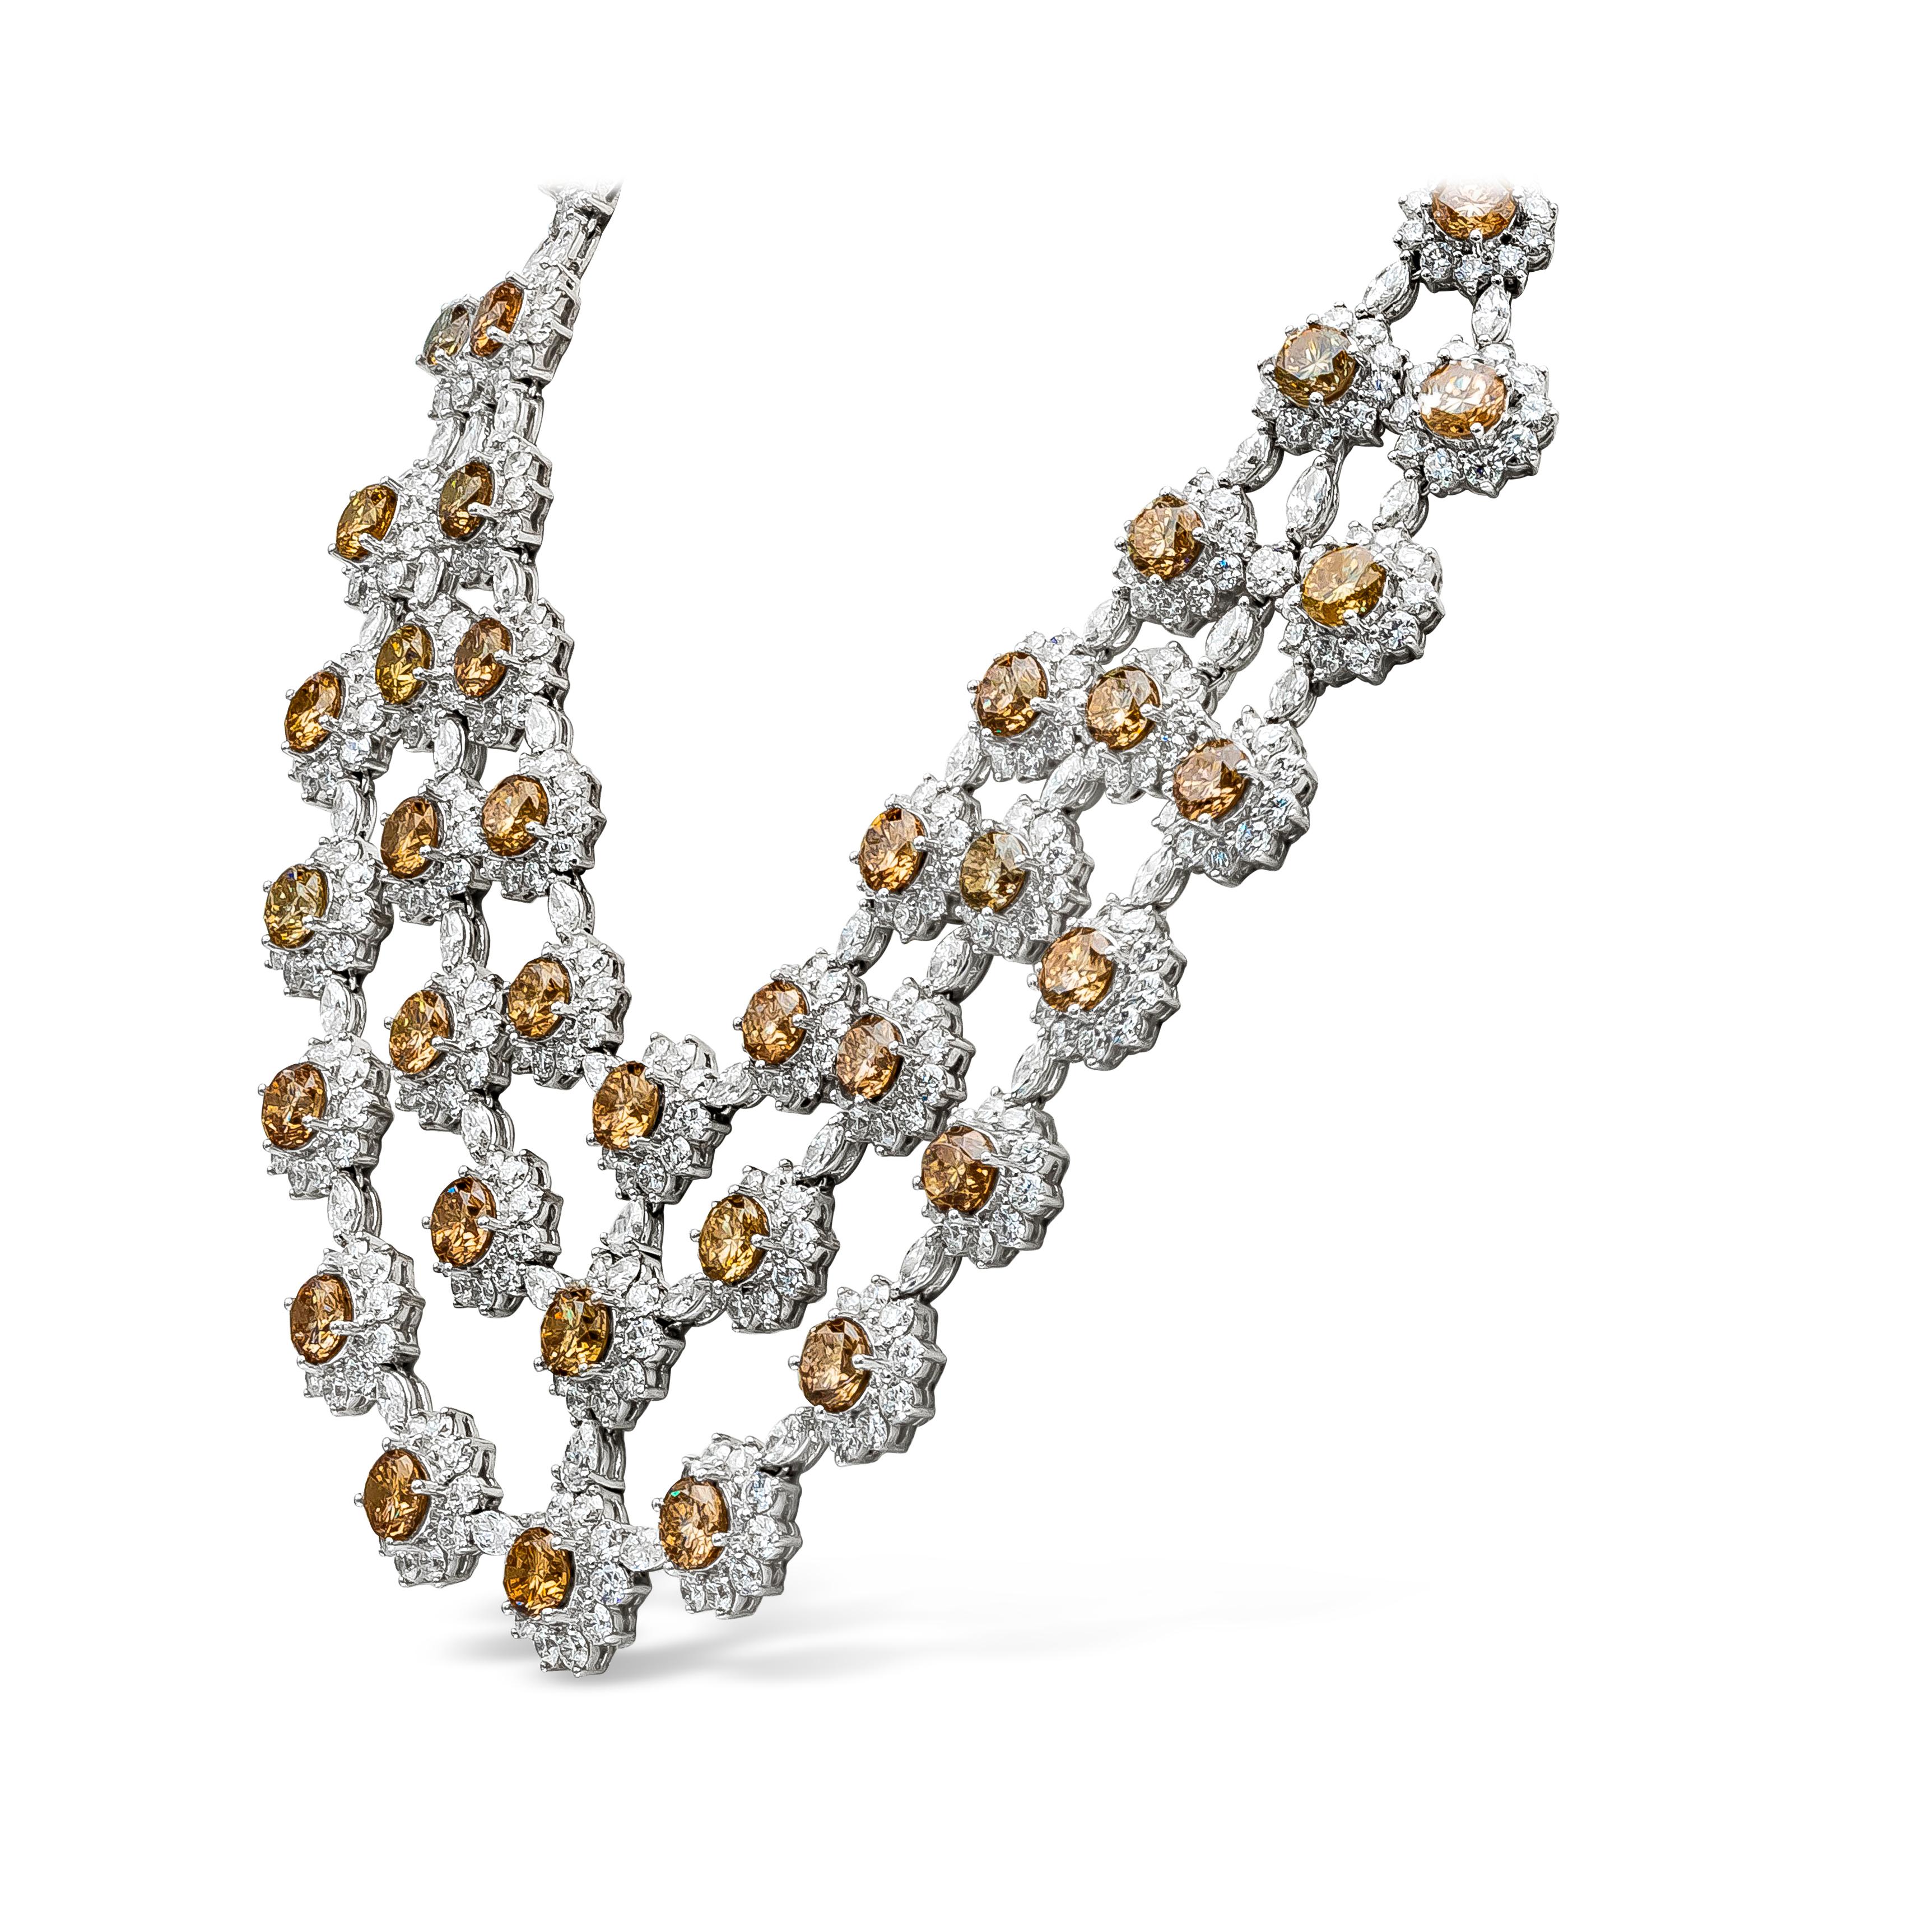 Diese wunderschöne Halskette besteht aus 47 natürlichen braunen runden Diamanten mit einem Gesamtgewicht von 68,57 Karat. Jeder braune Diamant ist von einer Gruppe weißer runder Diamanten in einem floralen Motiv umgeben, die von weißen